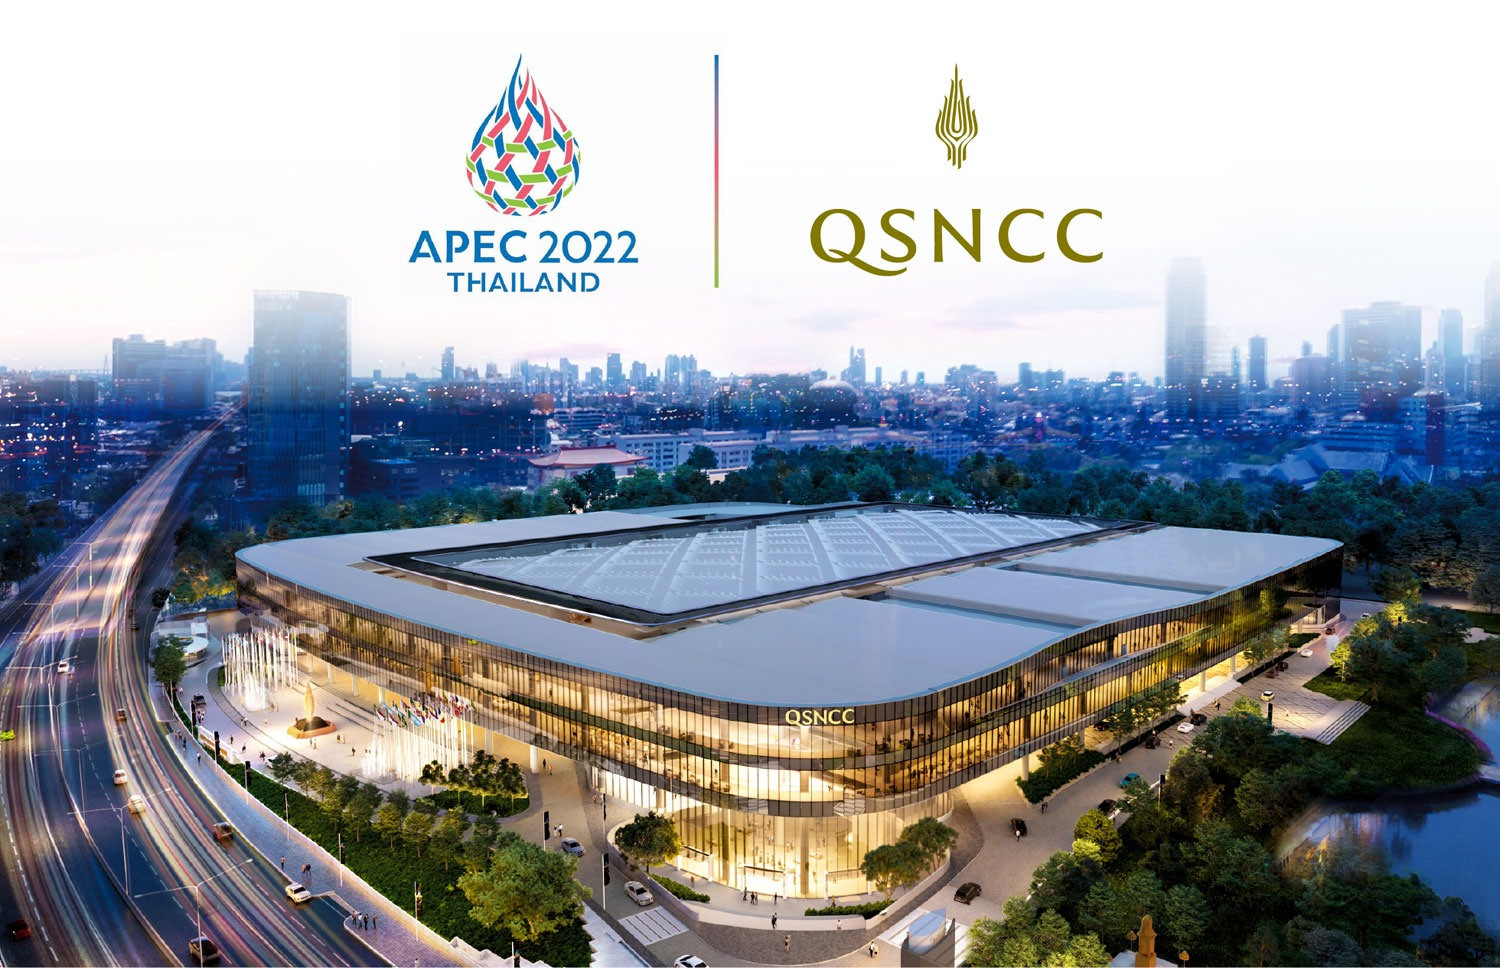 Tuần lễ Cấp cao APEC 2022 diễn ra tại Trung tâm hội nghị quốc gia Queen Sirikit ở thủ đô Bangkok (Thái